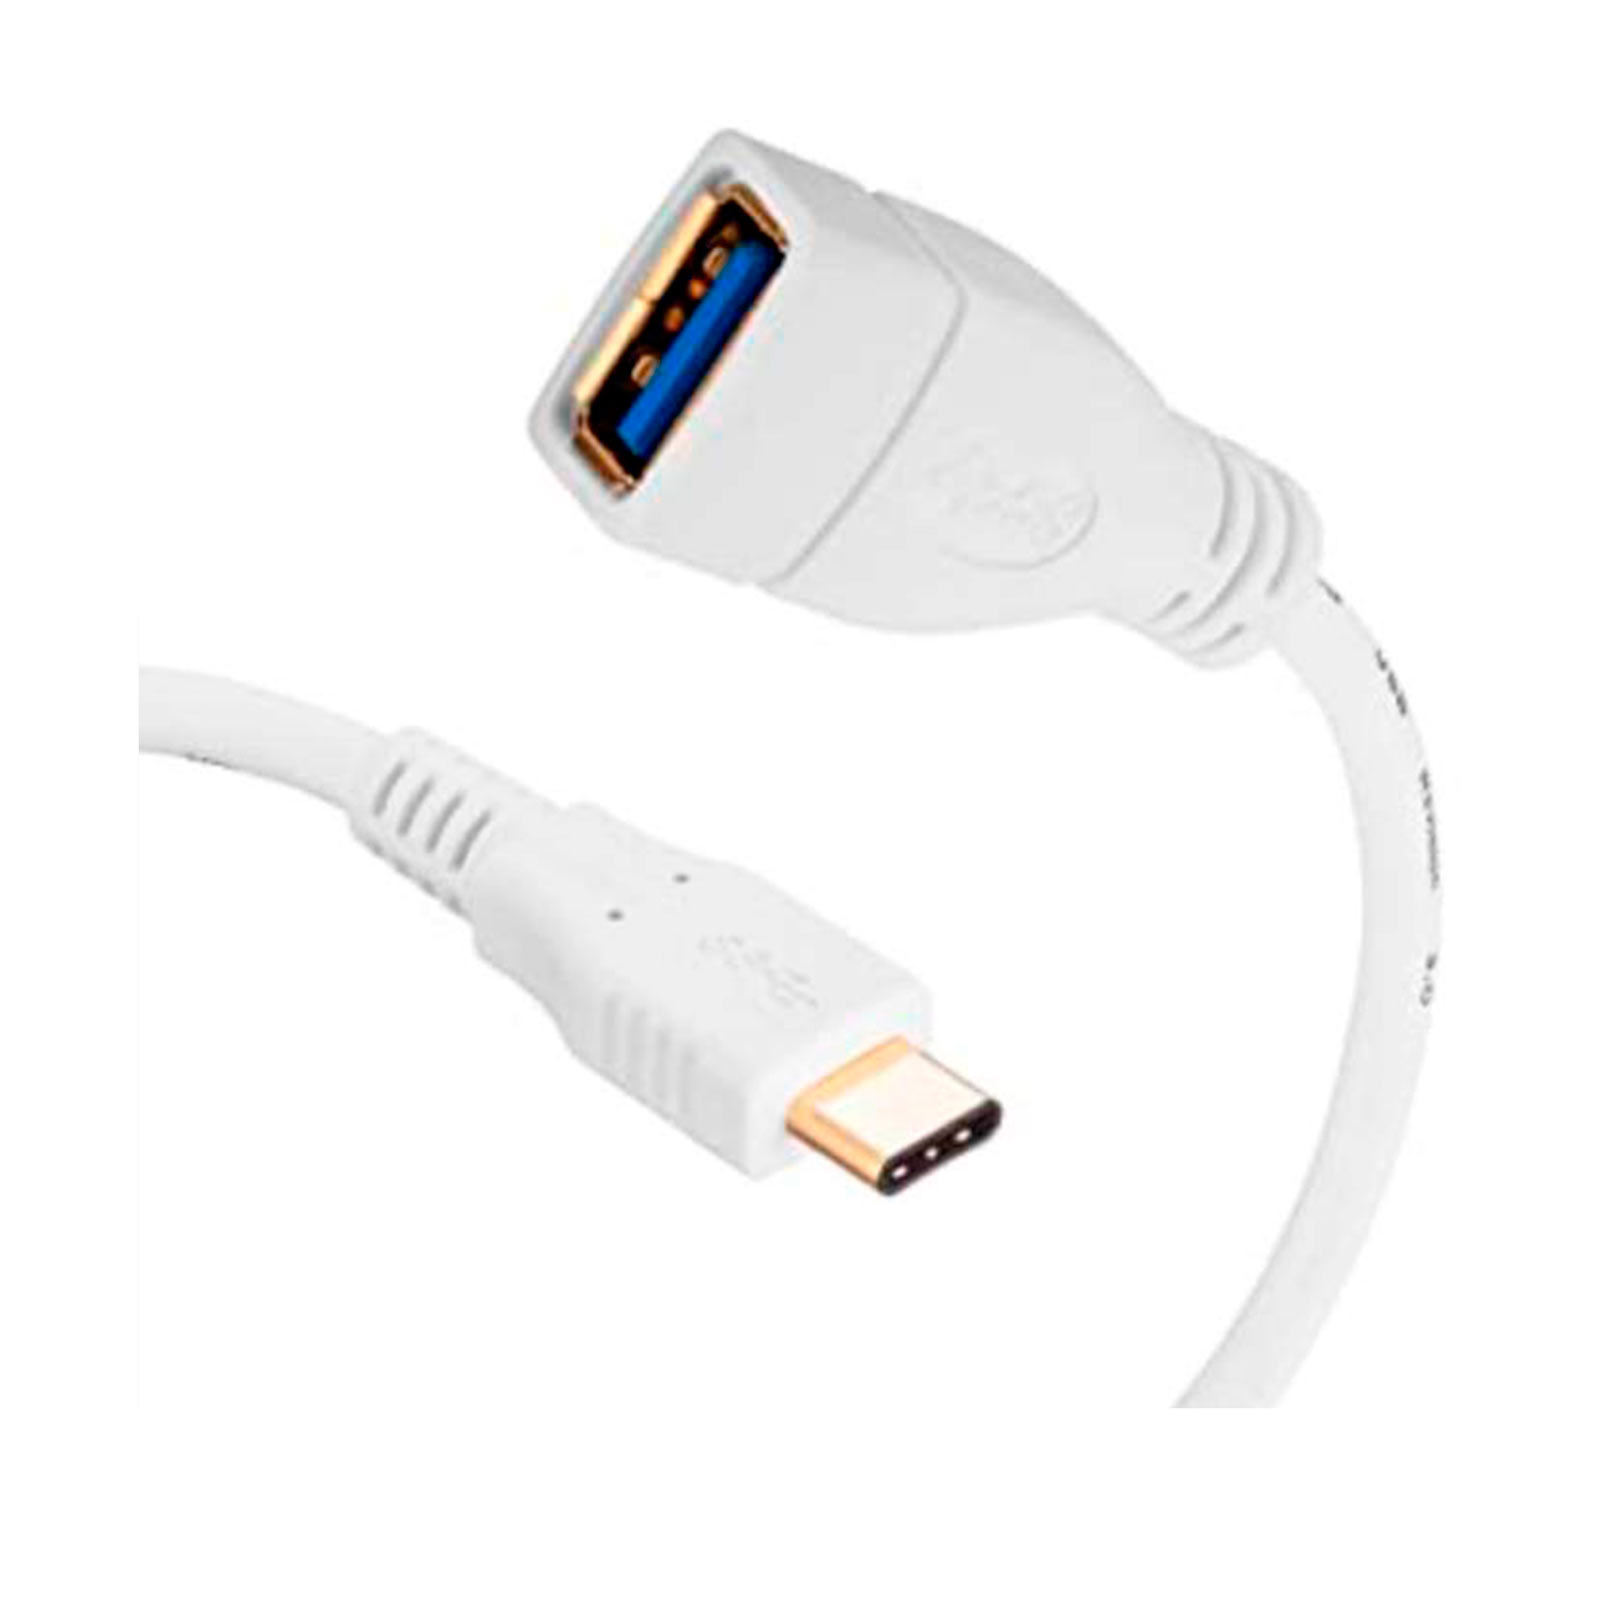 Cable Adaptador OTG USB Tipo C 3.1 a USB 3.0 hembra 10cm Nisuta